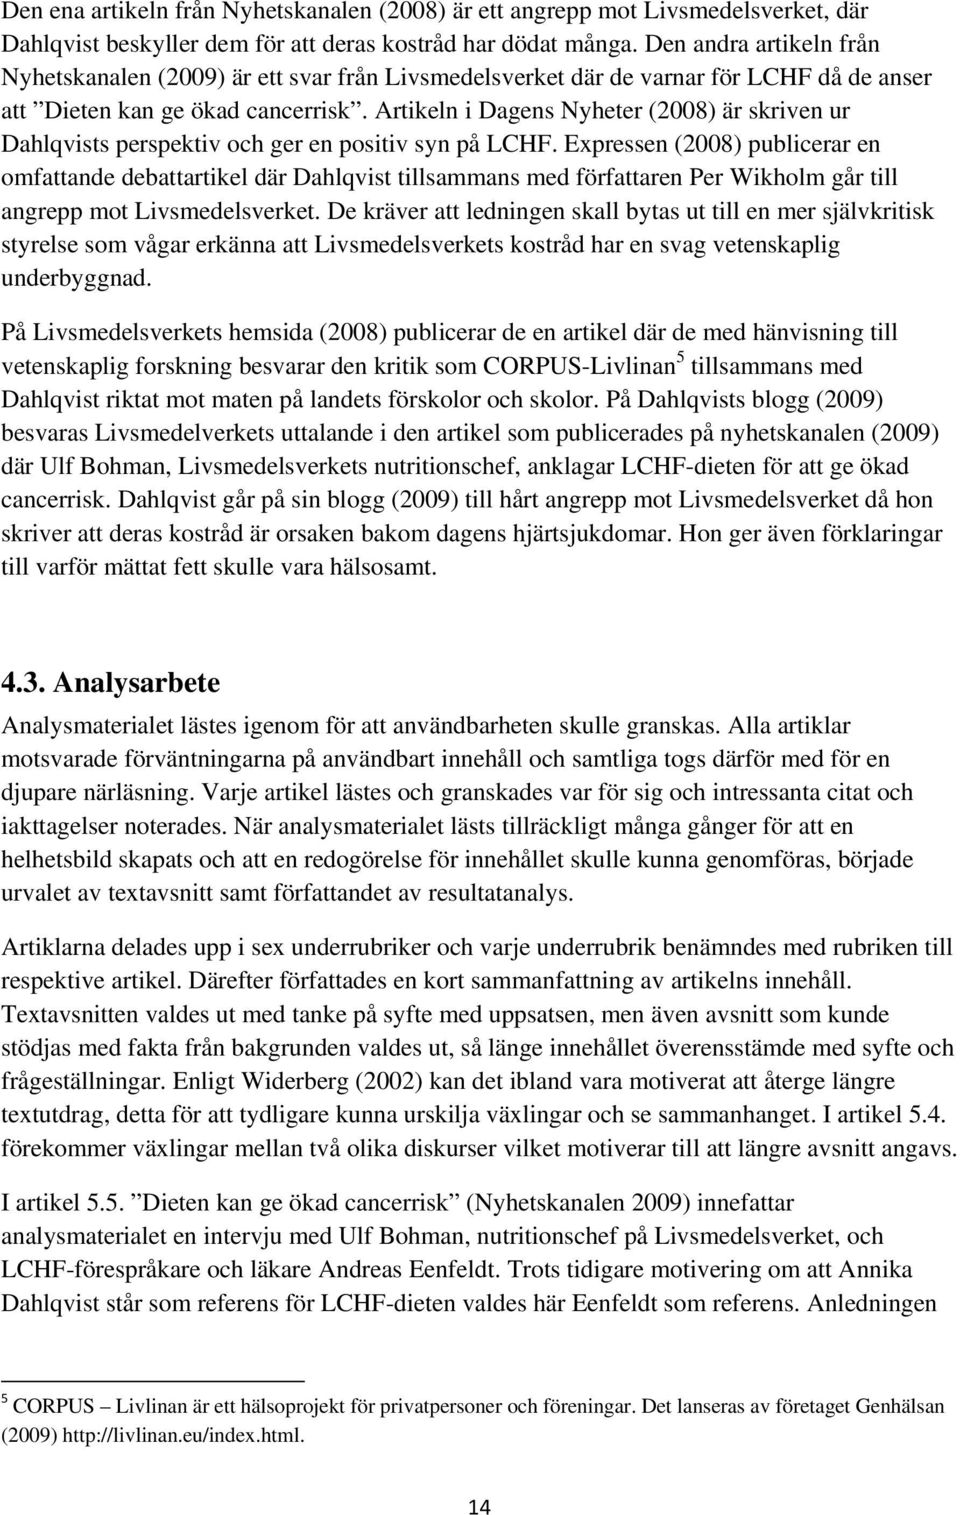 Artikeln i Dagens Nyheter (2008) är skriven ur Dahlqvists perspektiv och ger en positiv syn på LCHF.